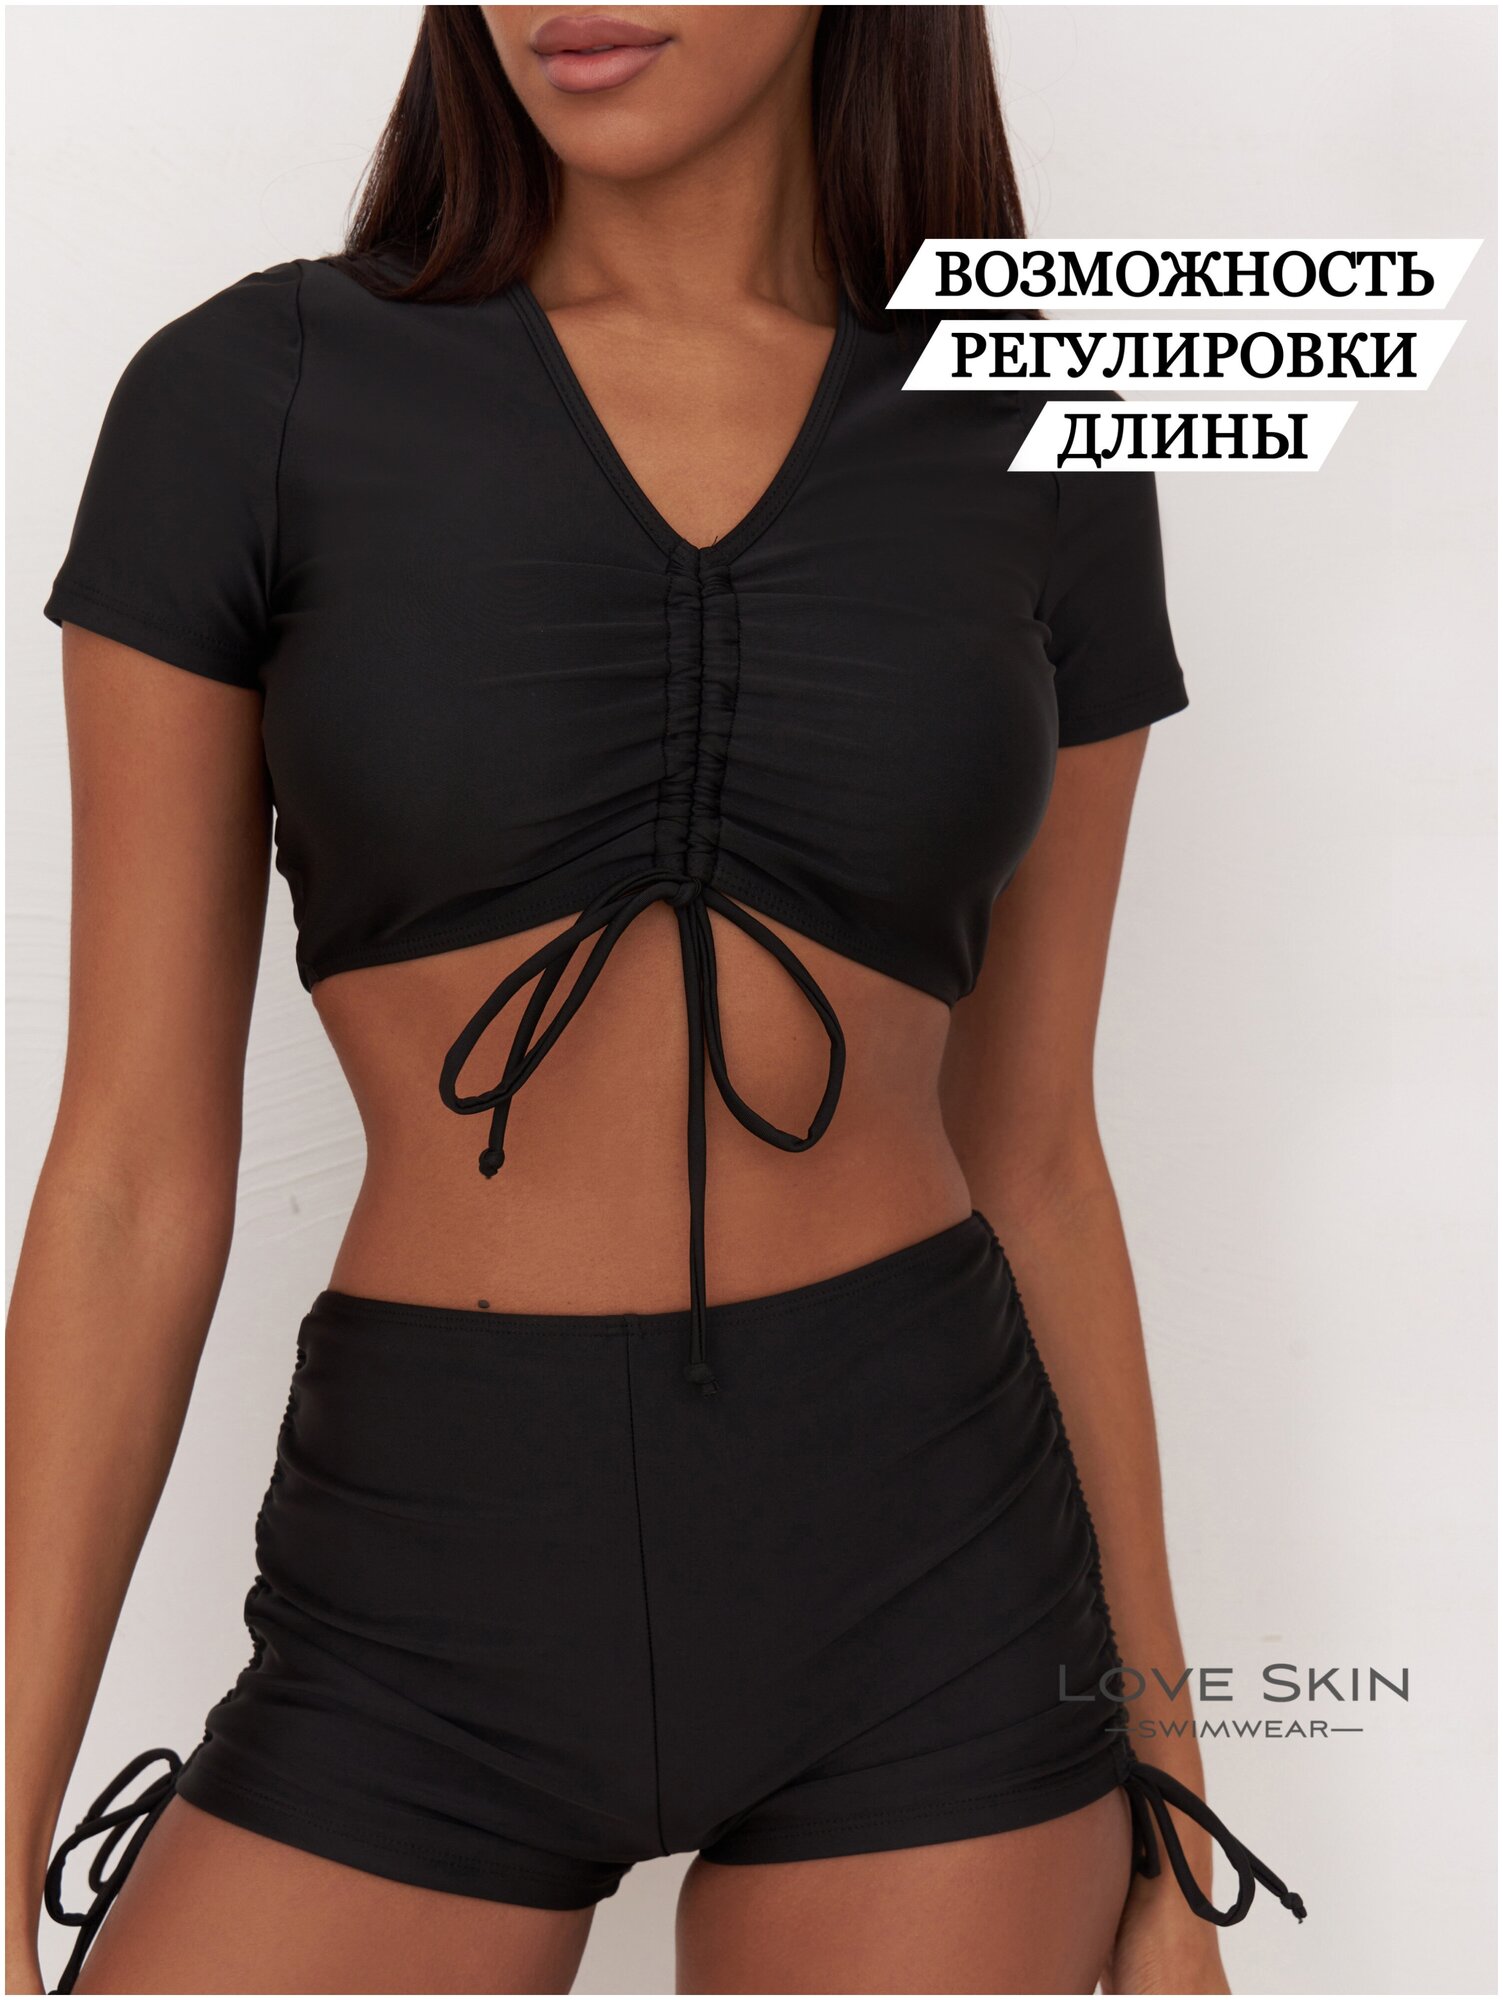 Купальник Love Skin, размер 44 (M), черный — купить в интернет-магазине по  низкой цене на Яндекс Маркете